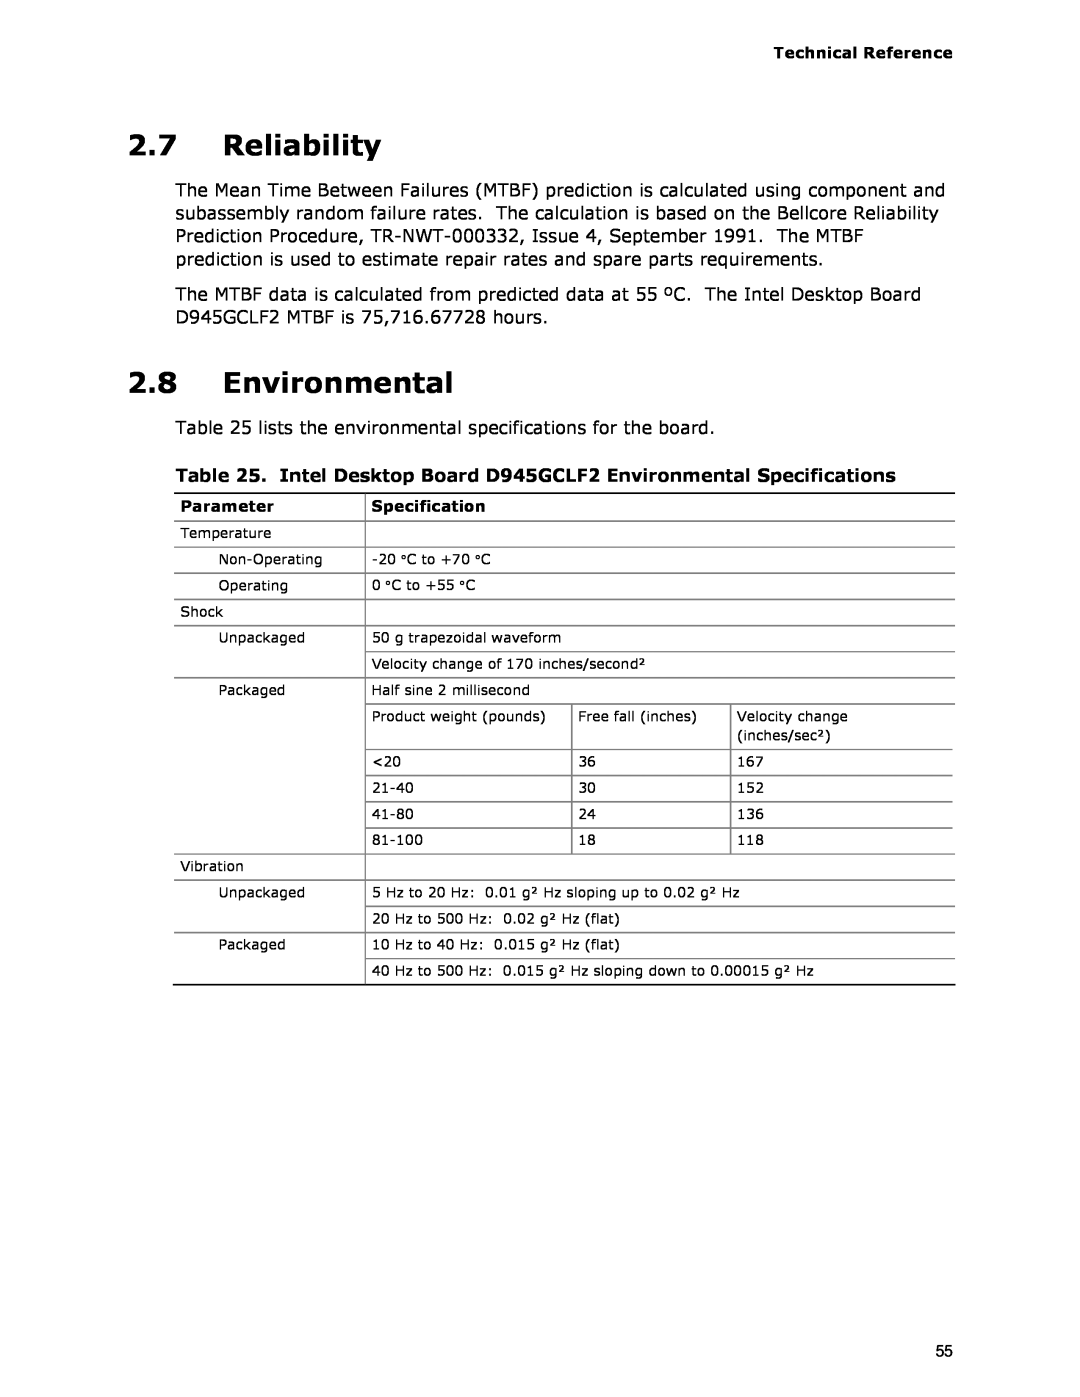 Intel specifications Reliability, Intel Desktop Board D945GCLF2 Environmental Specifications 